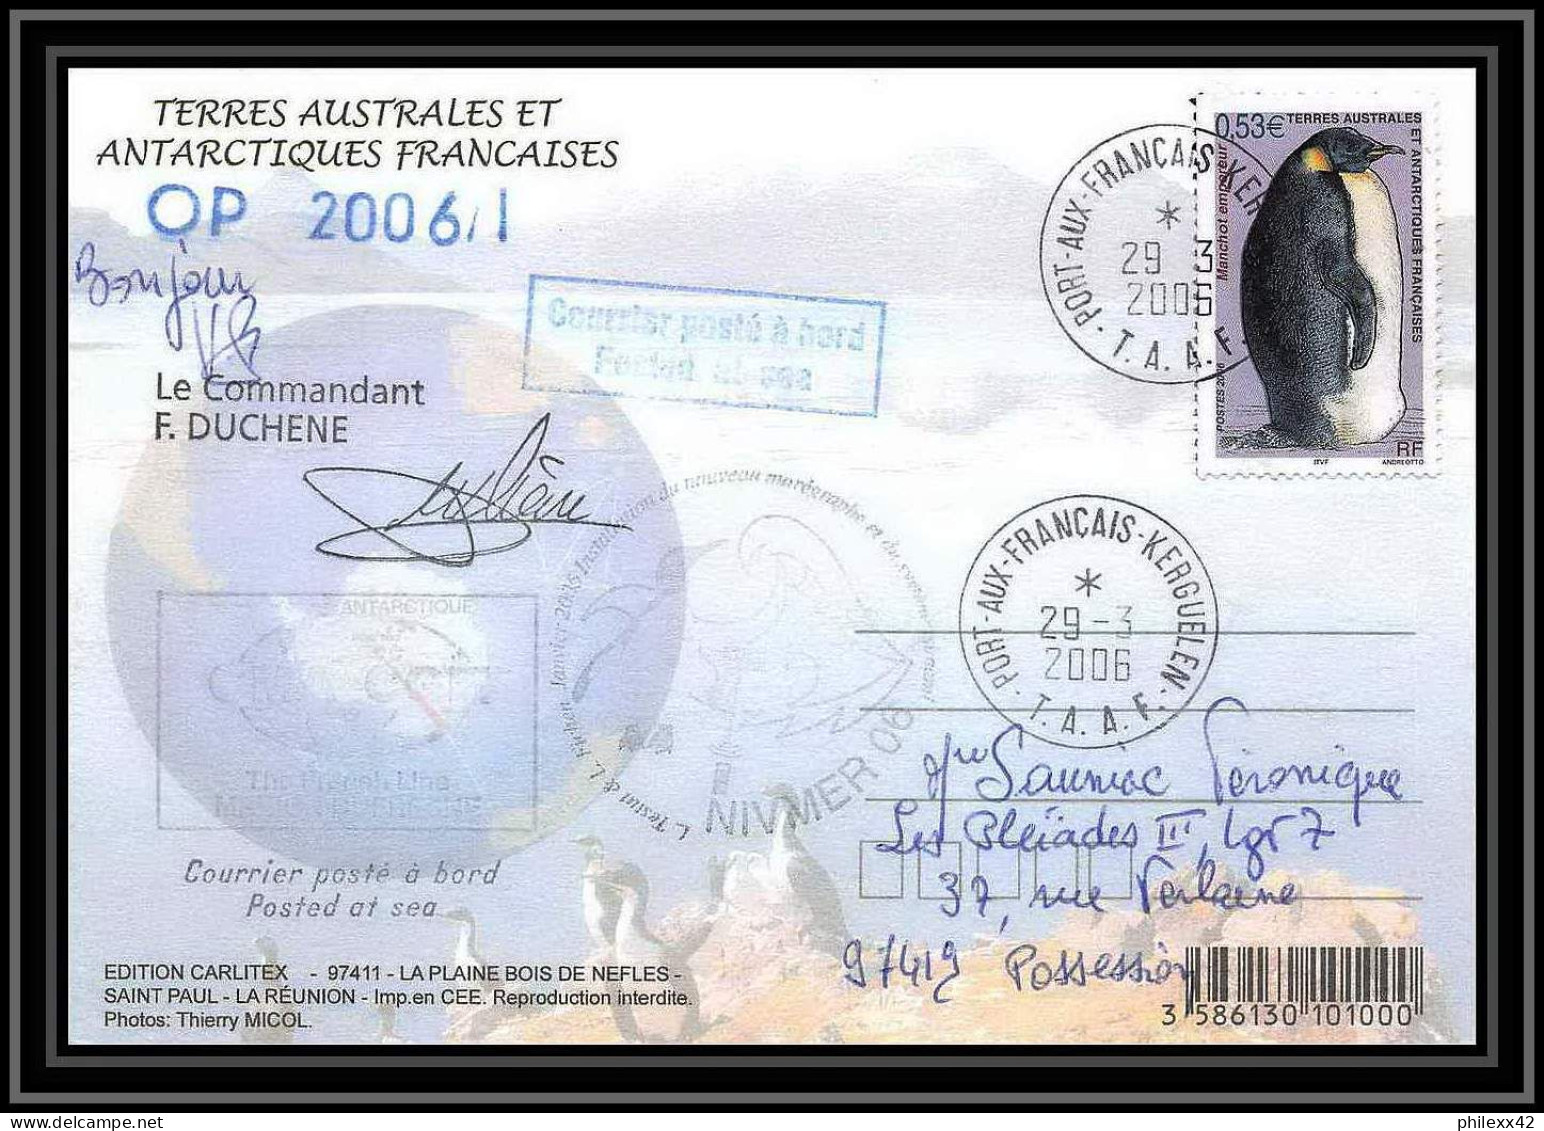 2634 ANTARCTIC Terres Australes (taaf)-carte Postale Dufresne 2 Signé Signed OP 2006/1 N°445 29/3/2006 - Cartas & Documentos